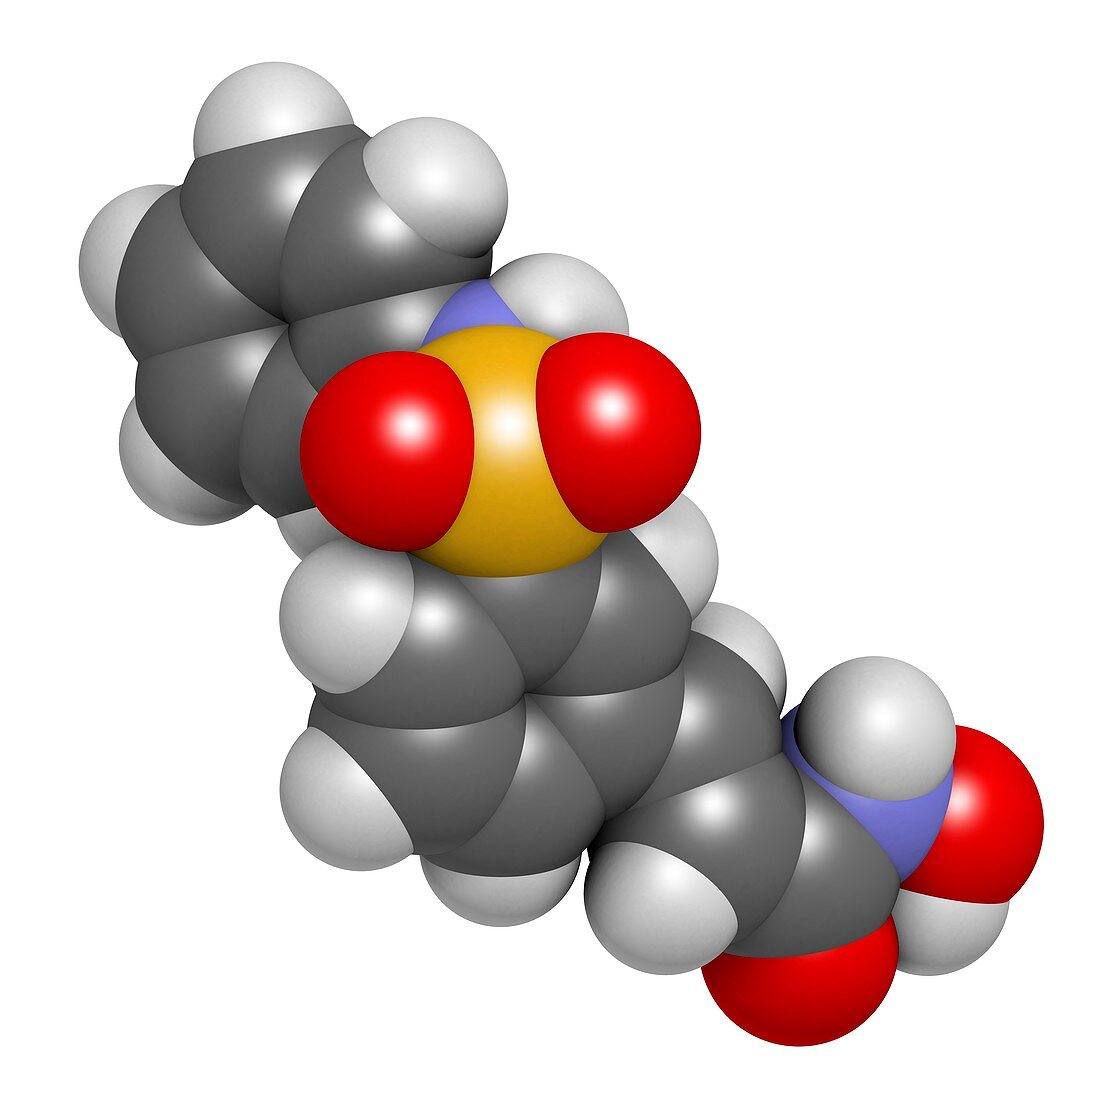 Belinostat cancer drug molecule